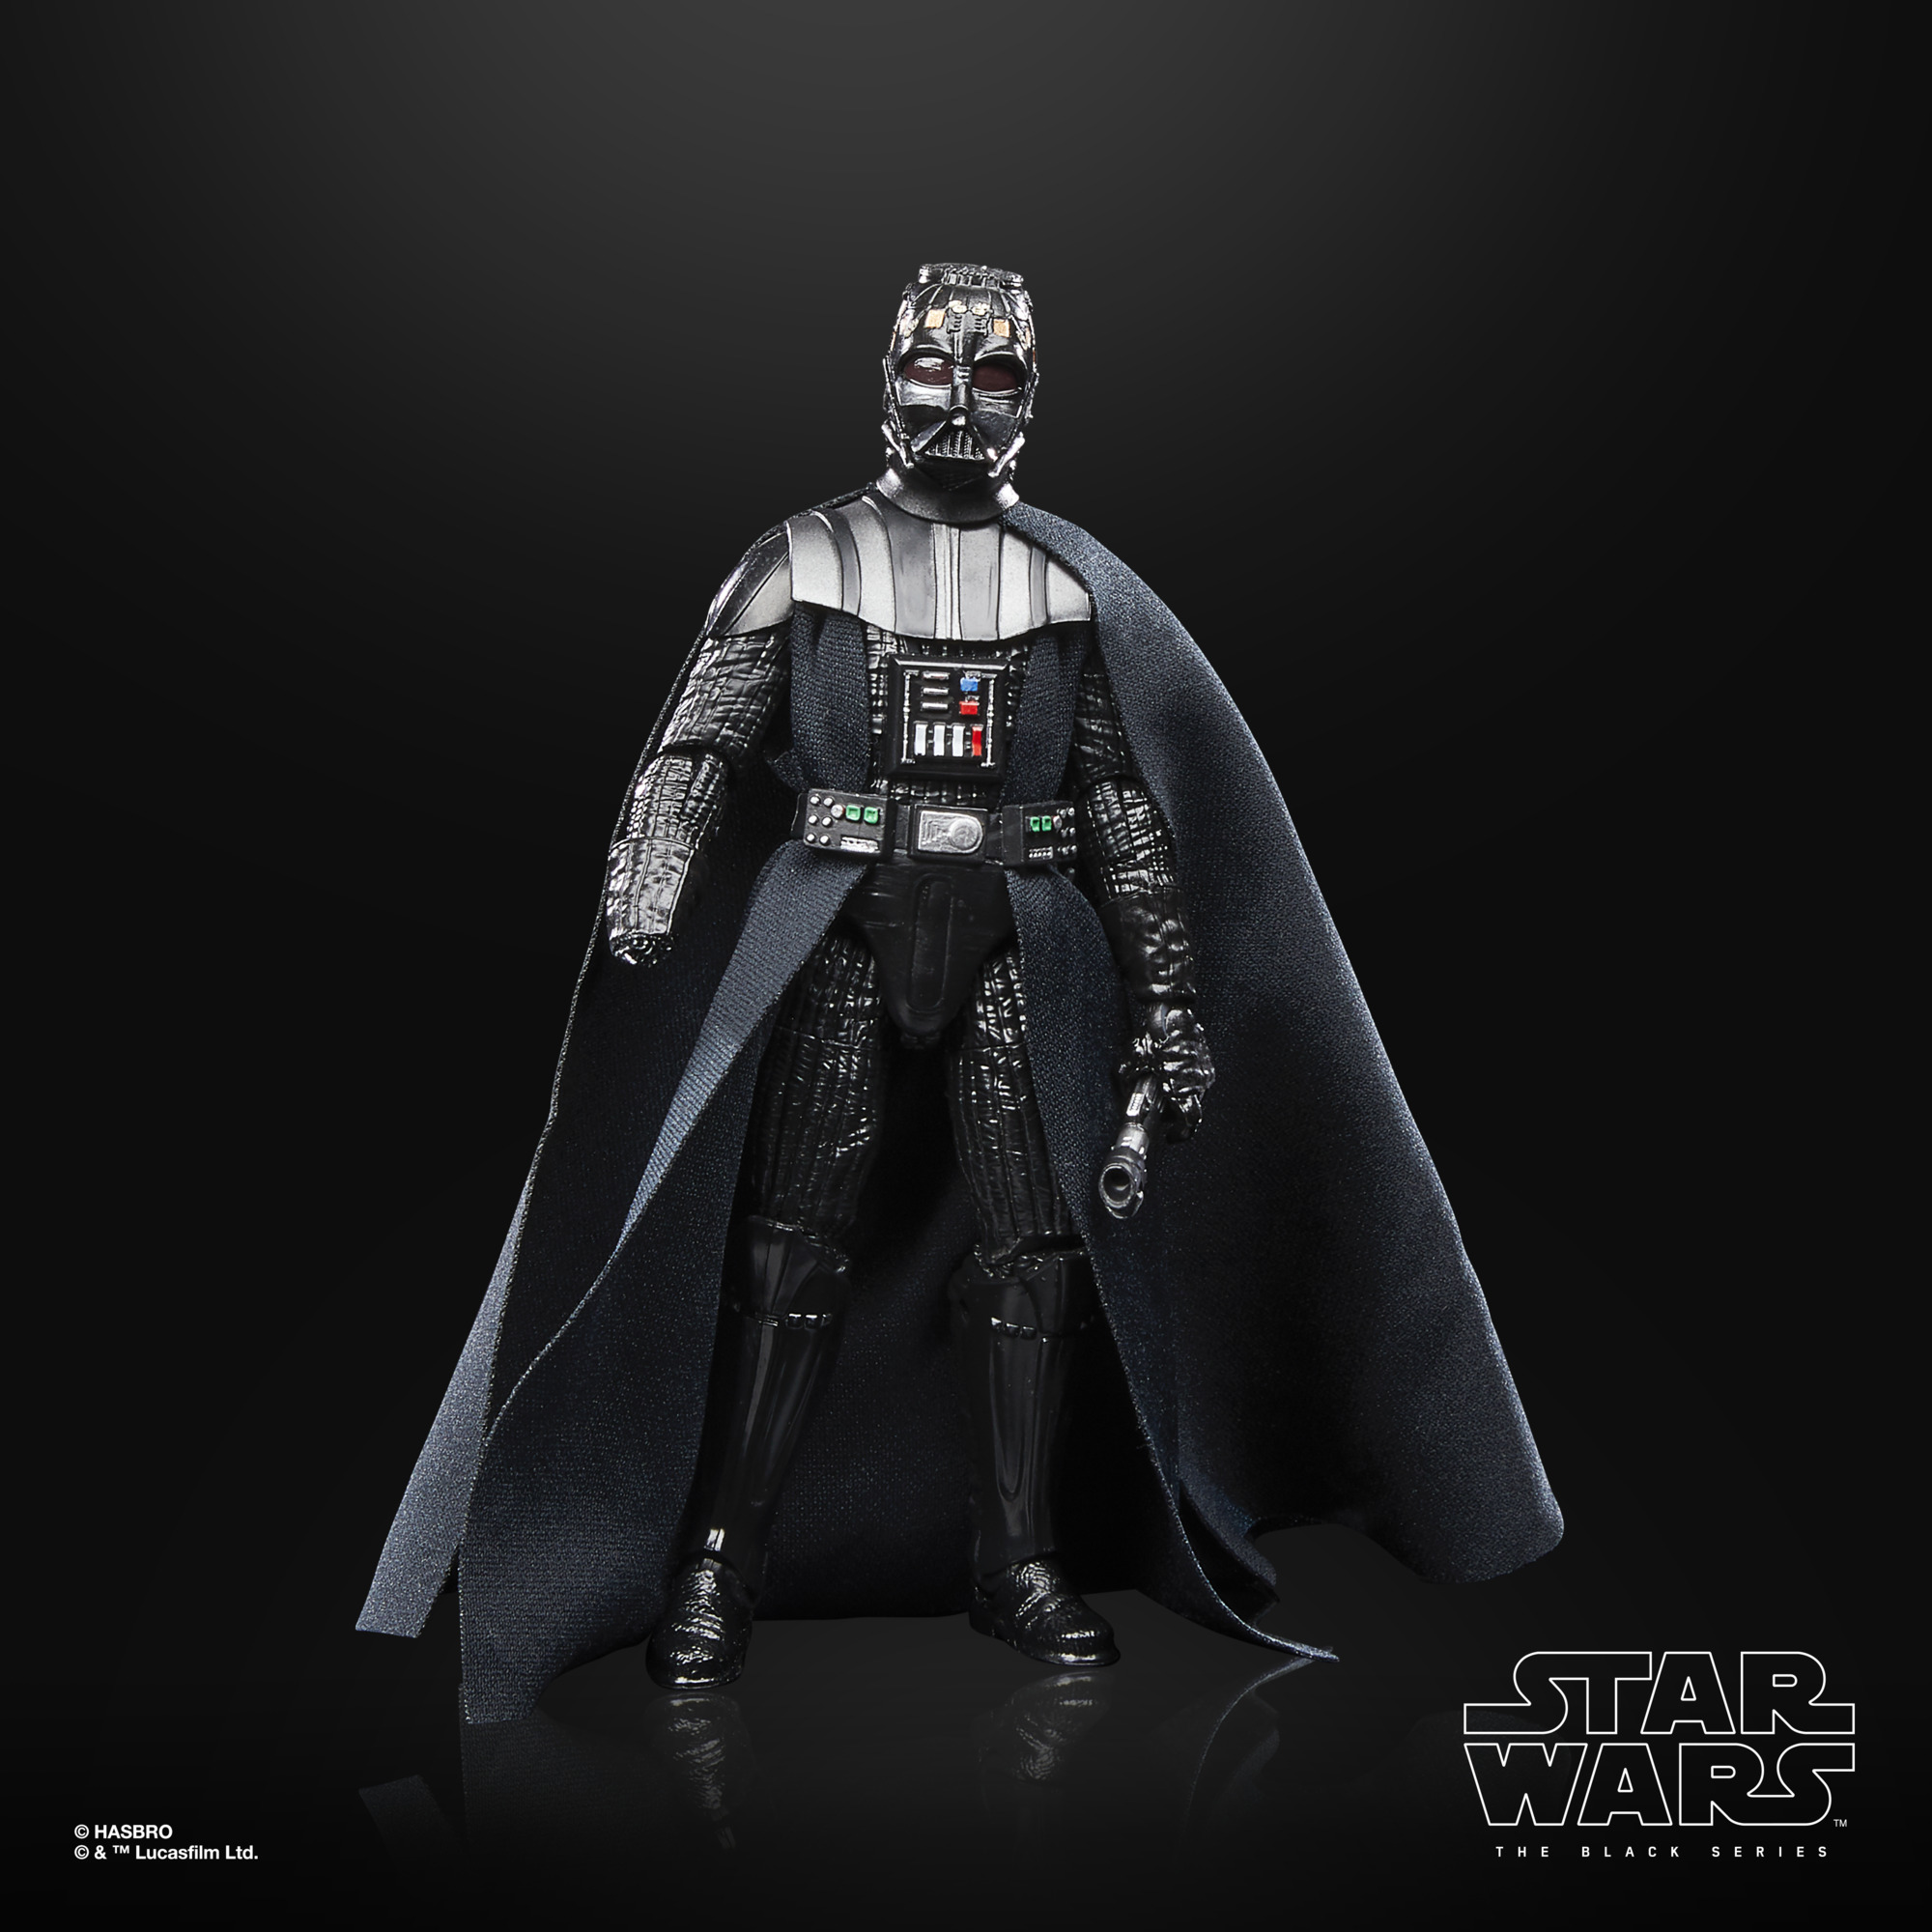 VP leicht beschädigt!!! Star Wars The Black Series 40th Anniversary Darth Vader F70825X2 5010996135773